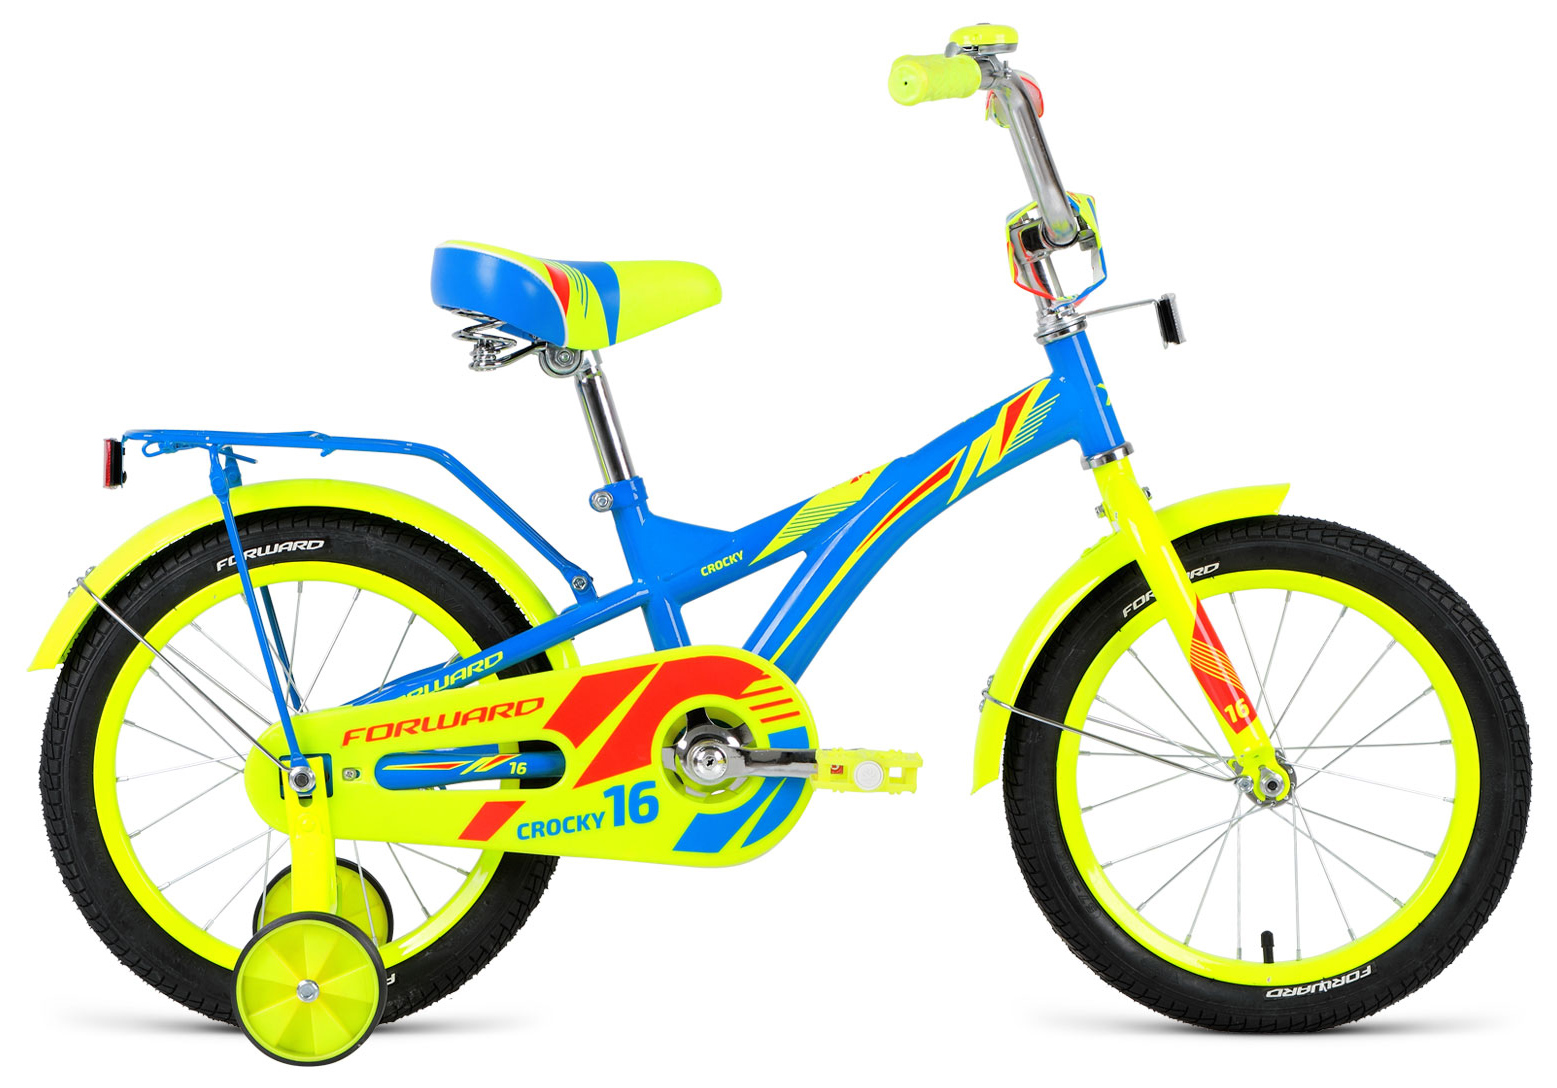  Велосипед трехколесный детский велосипед Forward Crocky 16 2019